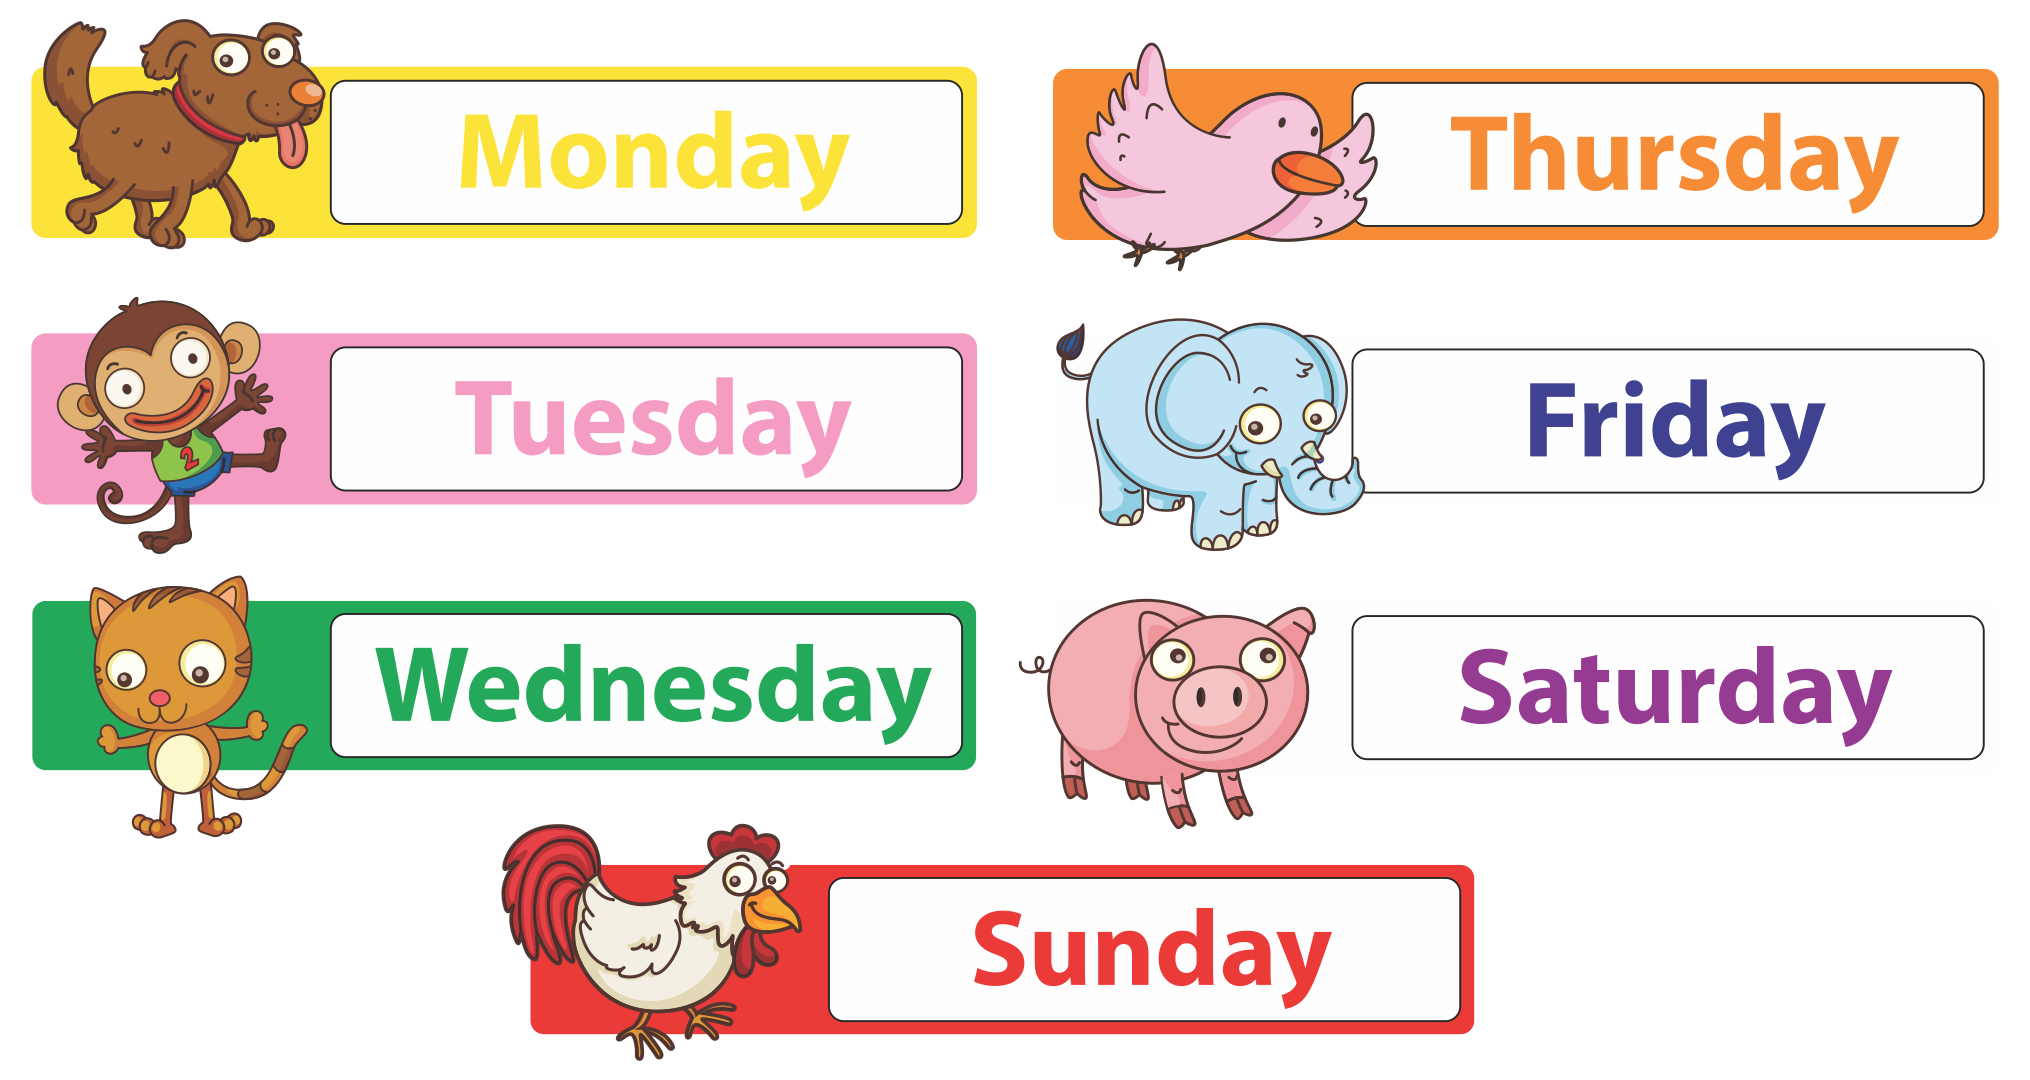 Days of the Week Preschool Printable Calendar